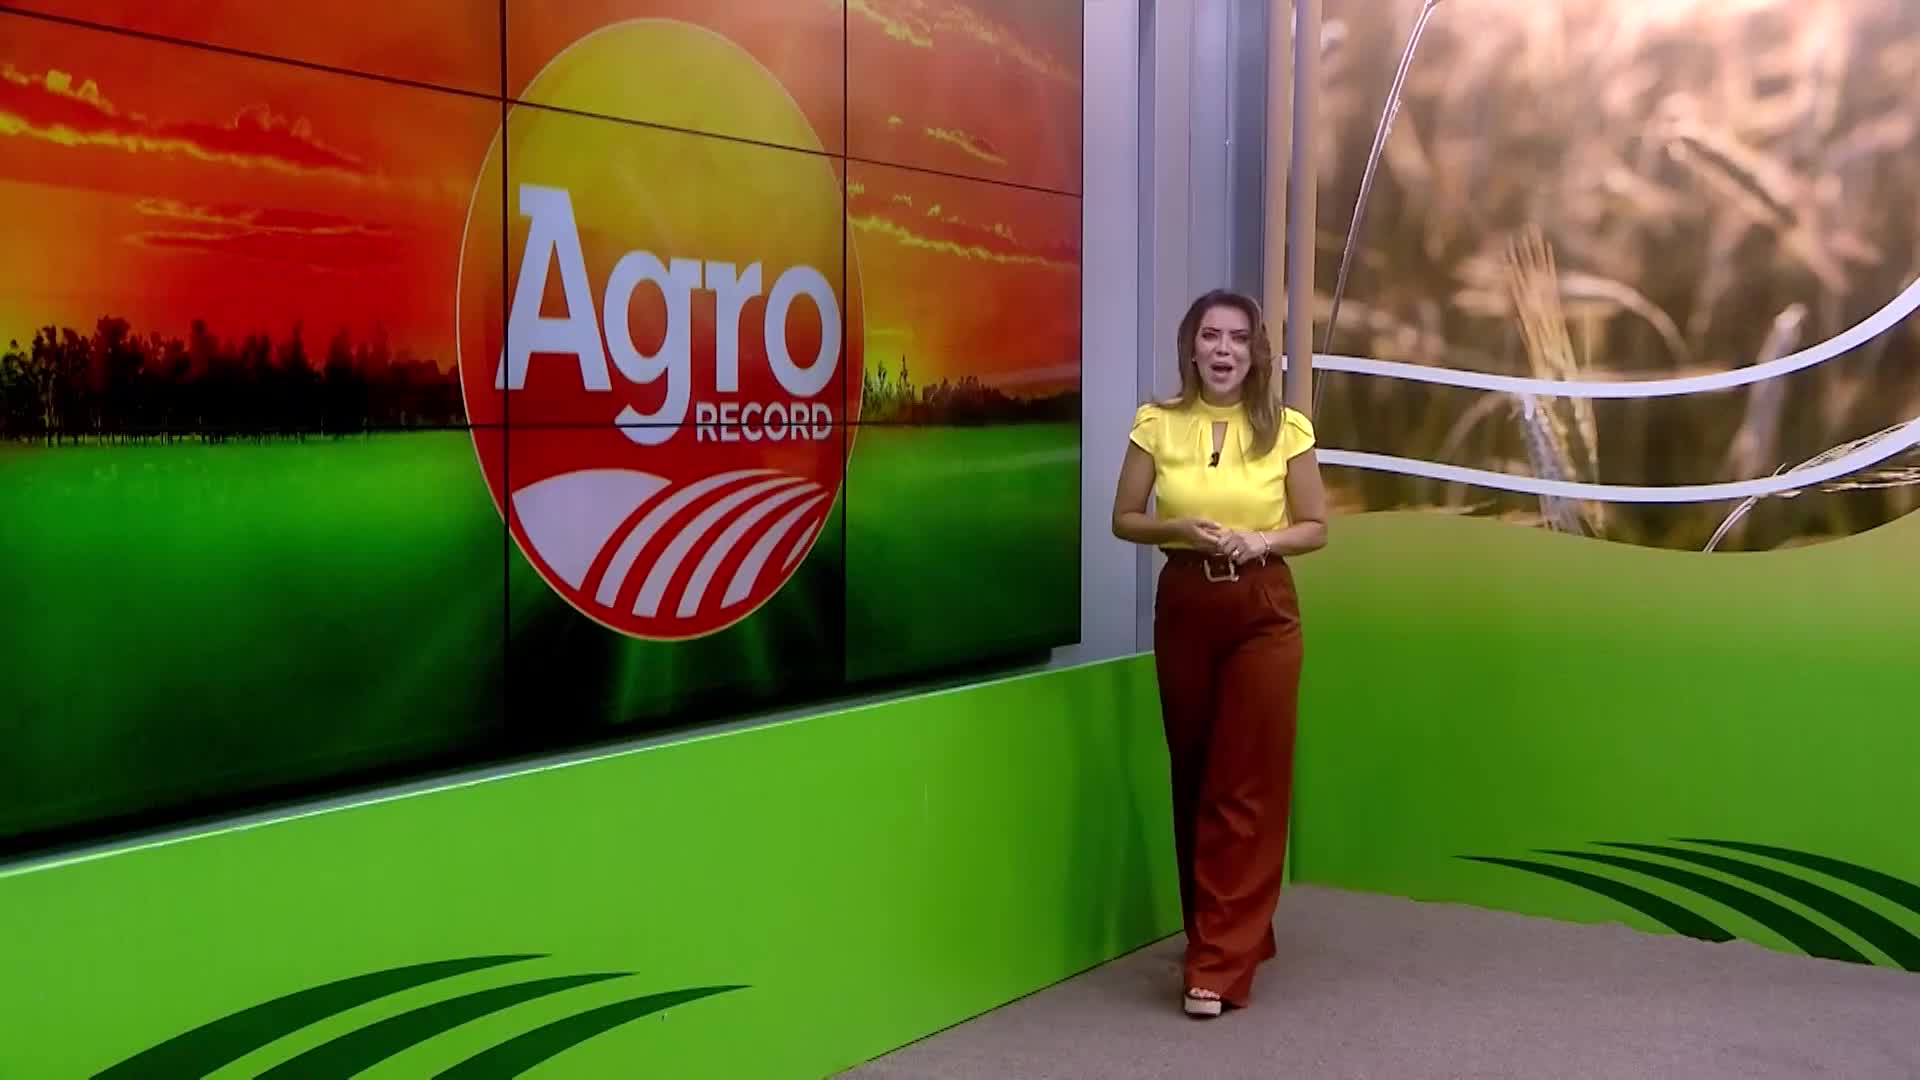 Vídeo: Veja a íntegra do Agro Record deste domingo (22)